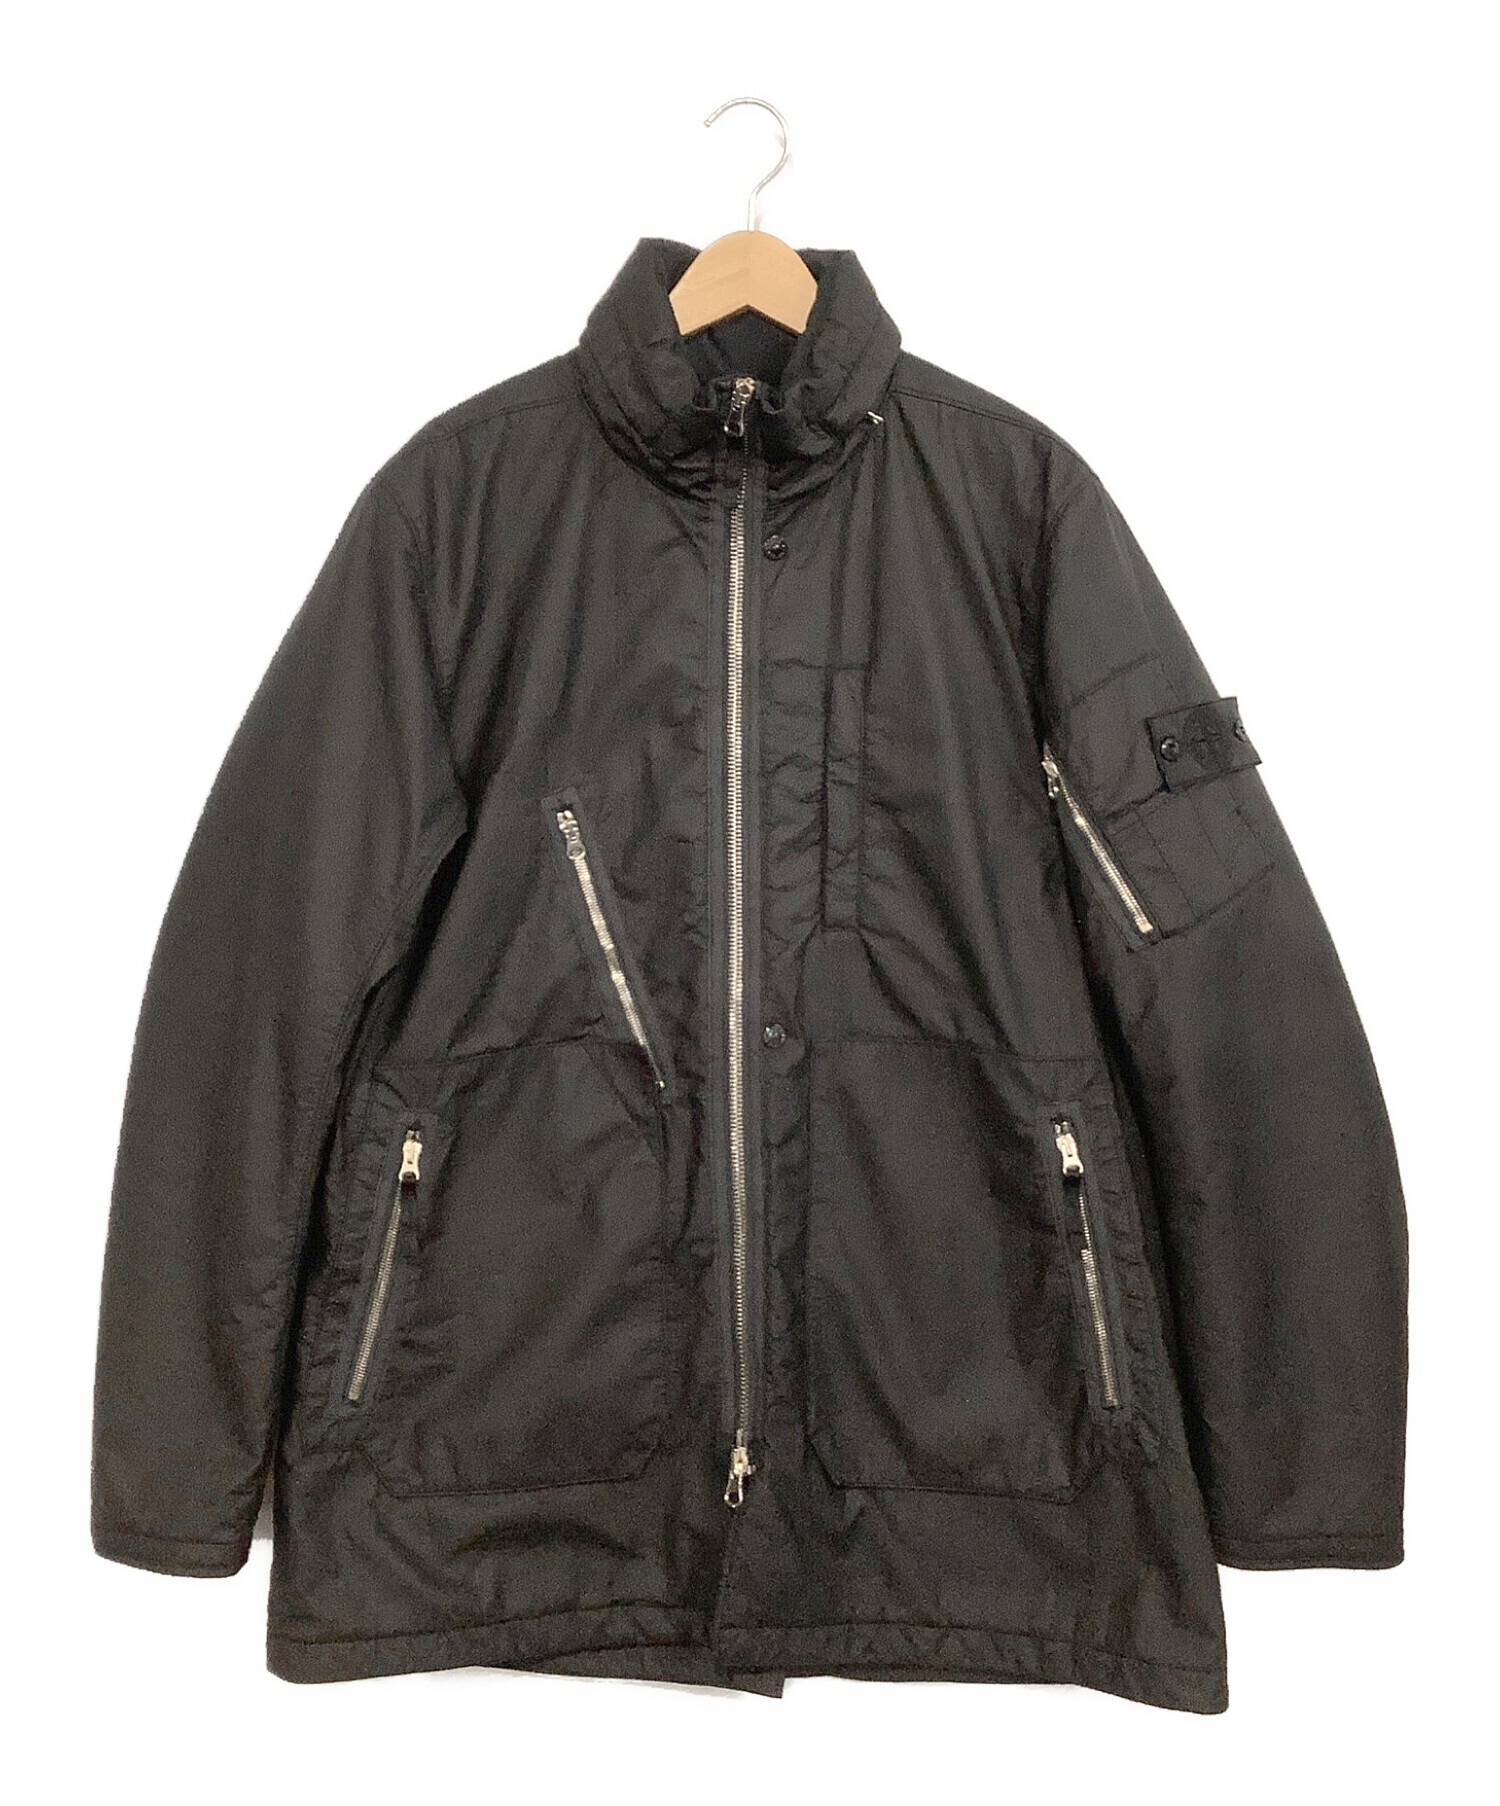 STONE ISLAND SHADOW PROJECT (ストーンアイランド シャドウプロジェクト) 3/4 jacket ブラック サイズ:M